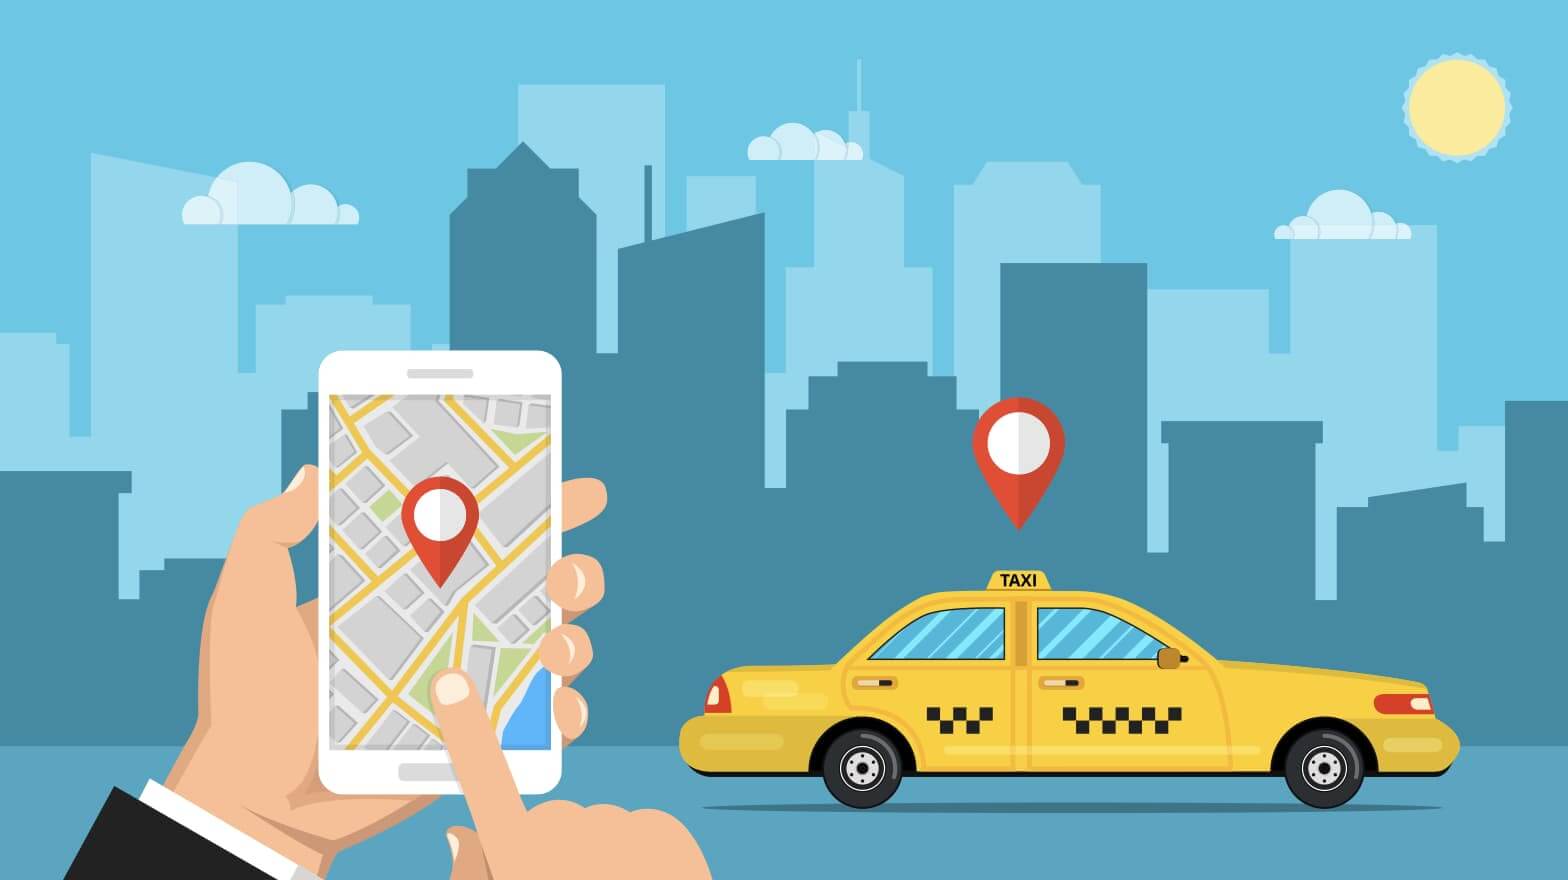 長野で使えるタクシーアプリとクーポン情報